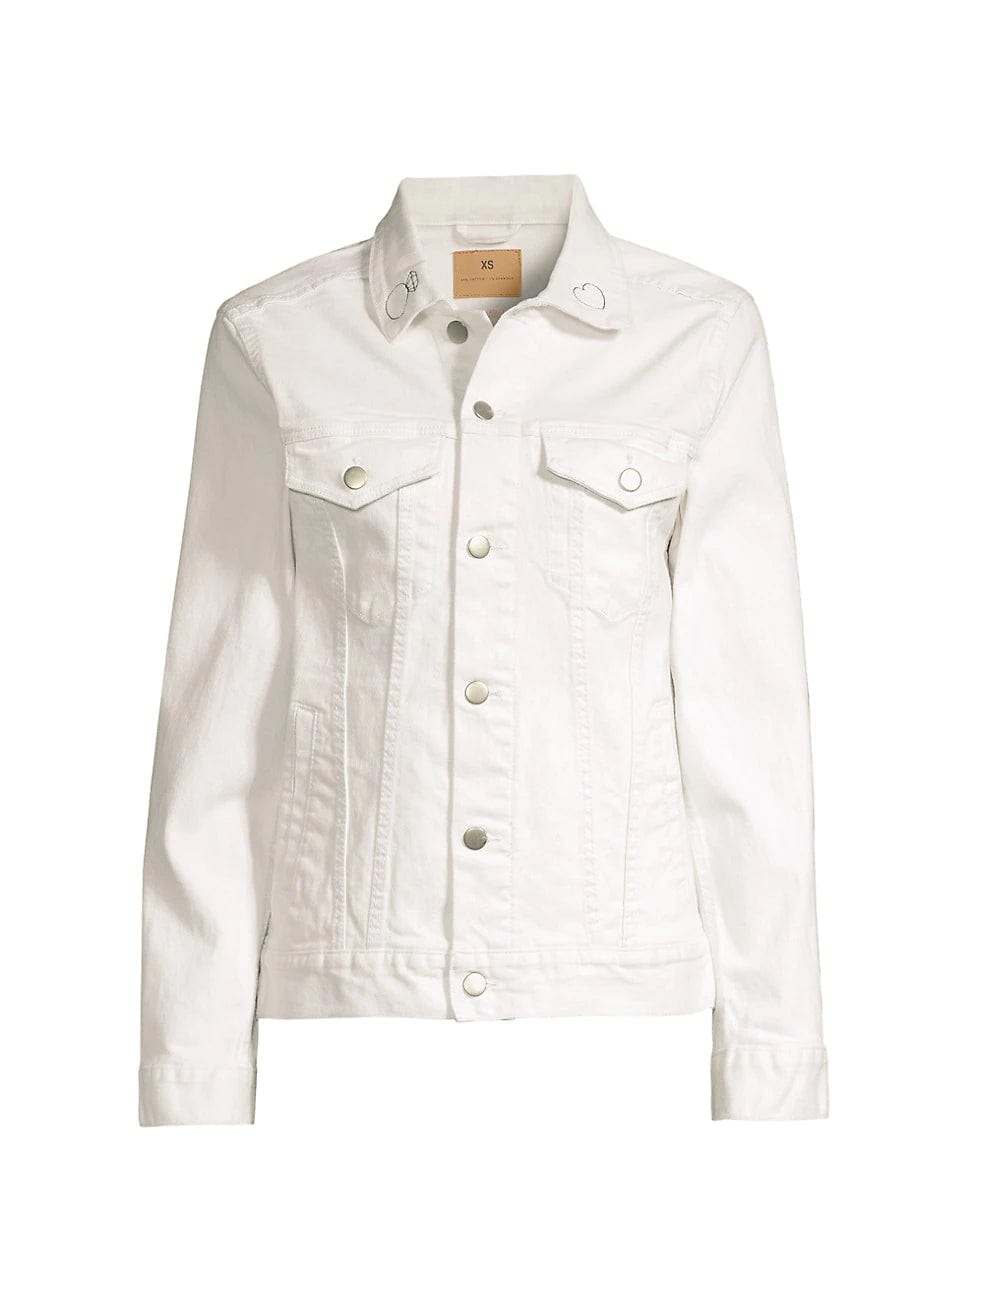 juju + stitch Personalized Custom Embroidered Adult XS / White Denim / wifey "wifey" Adult Oversized Denim Jacket